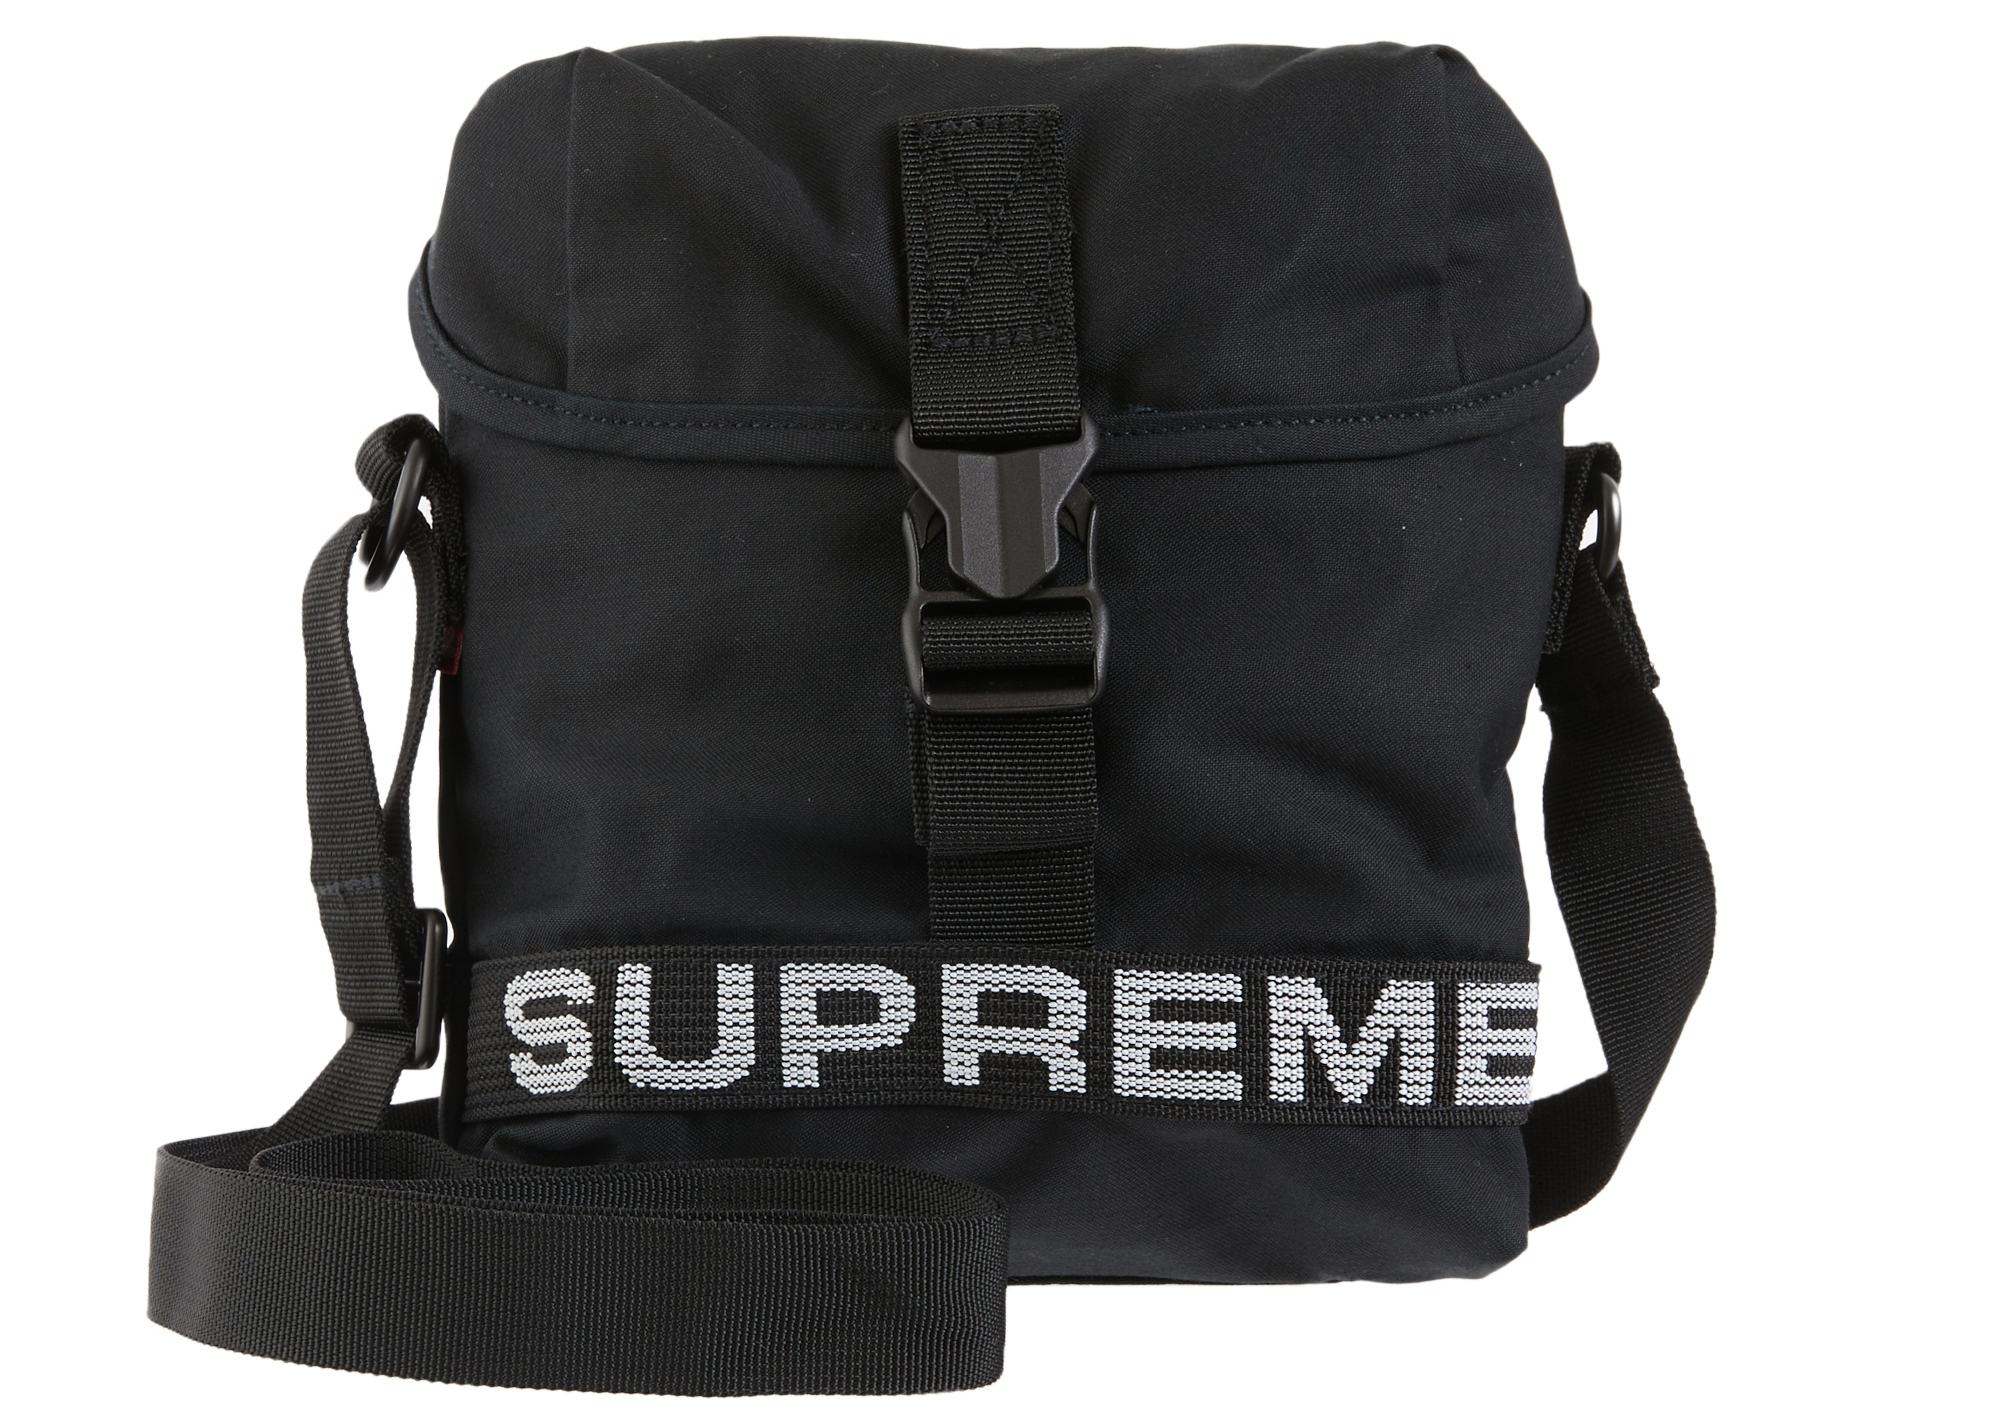 Supreme 23Ss Field Messenger Bag Black-